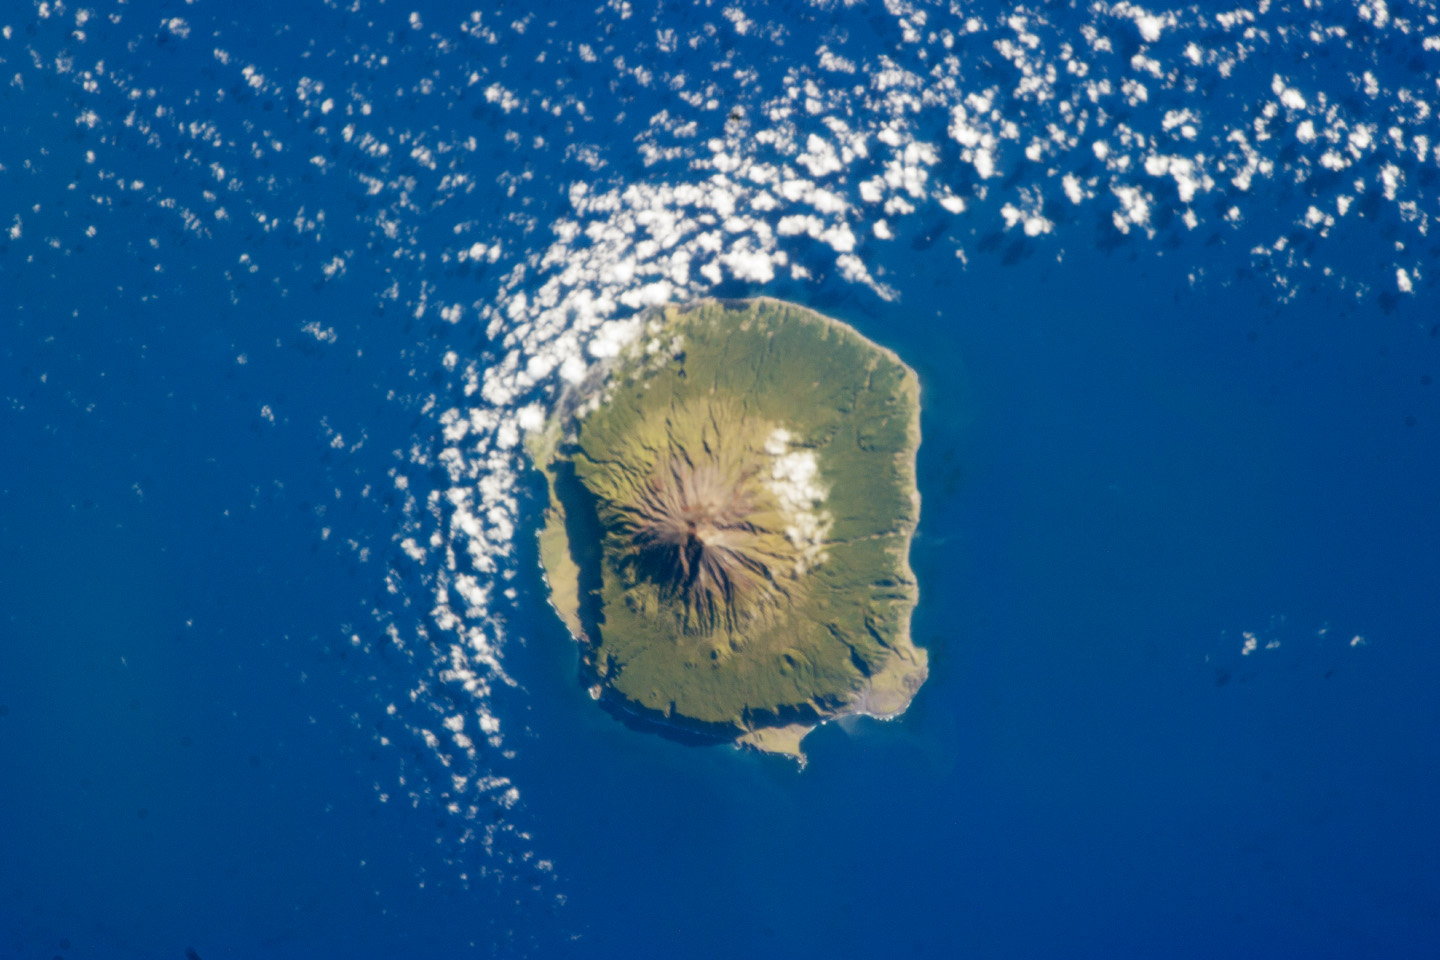 Tristan da Cunha, South Atlantic Ocean - related image preview